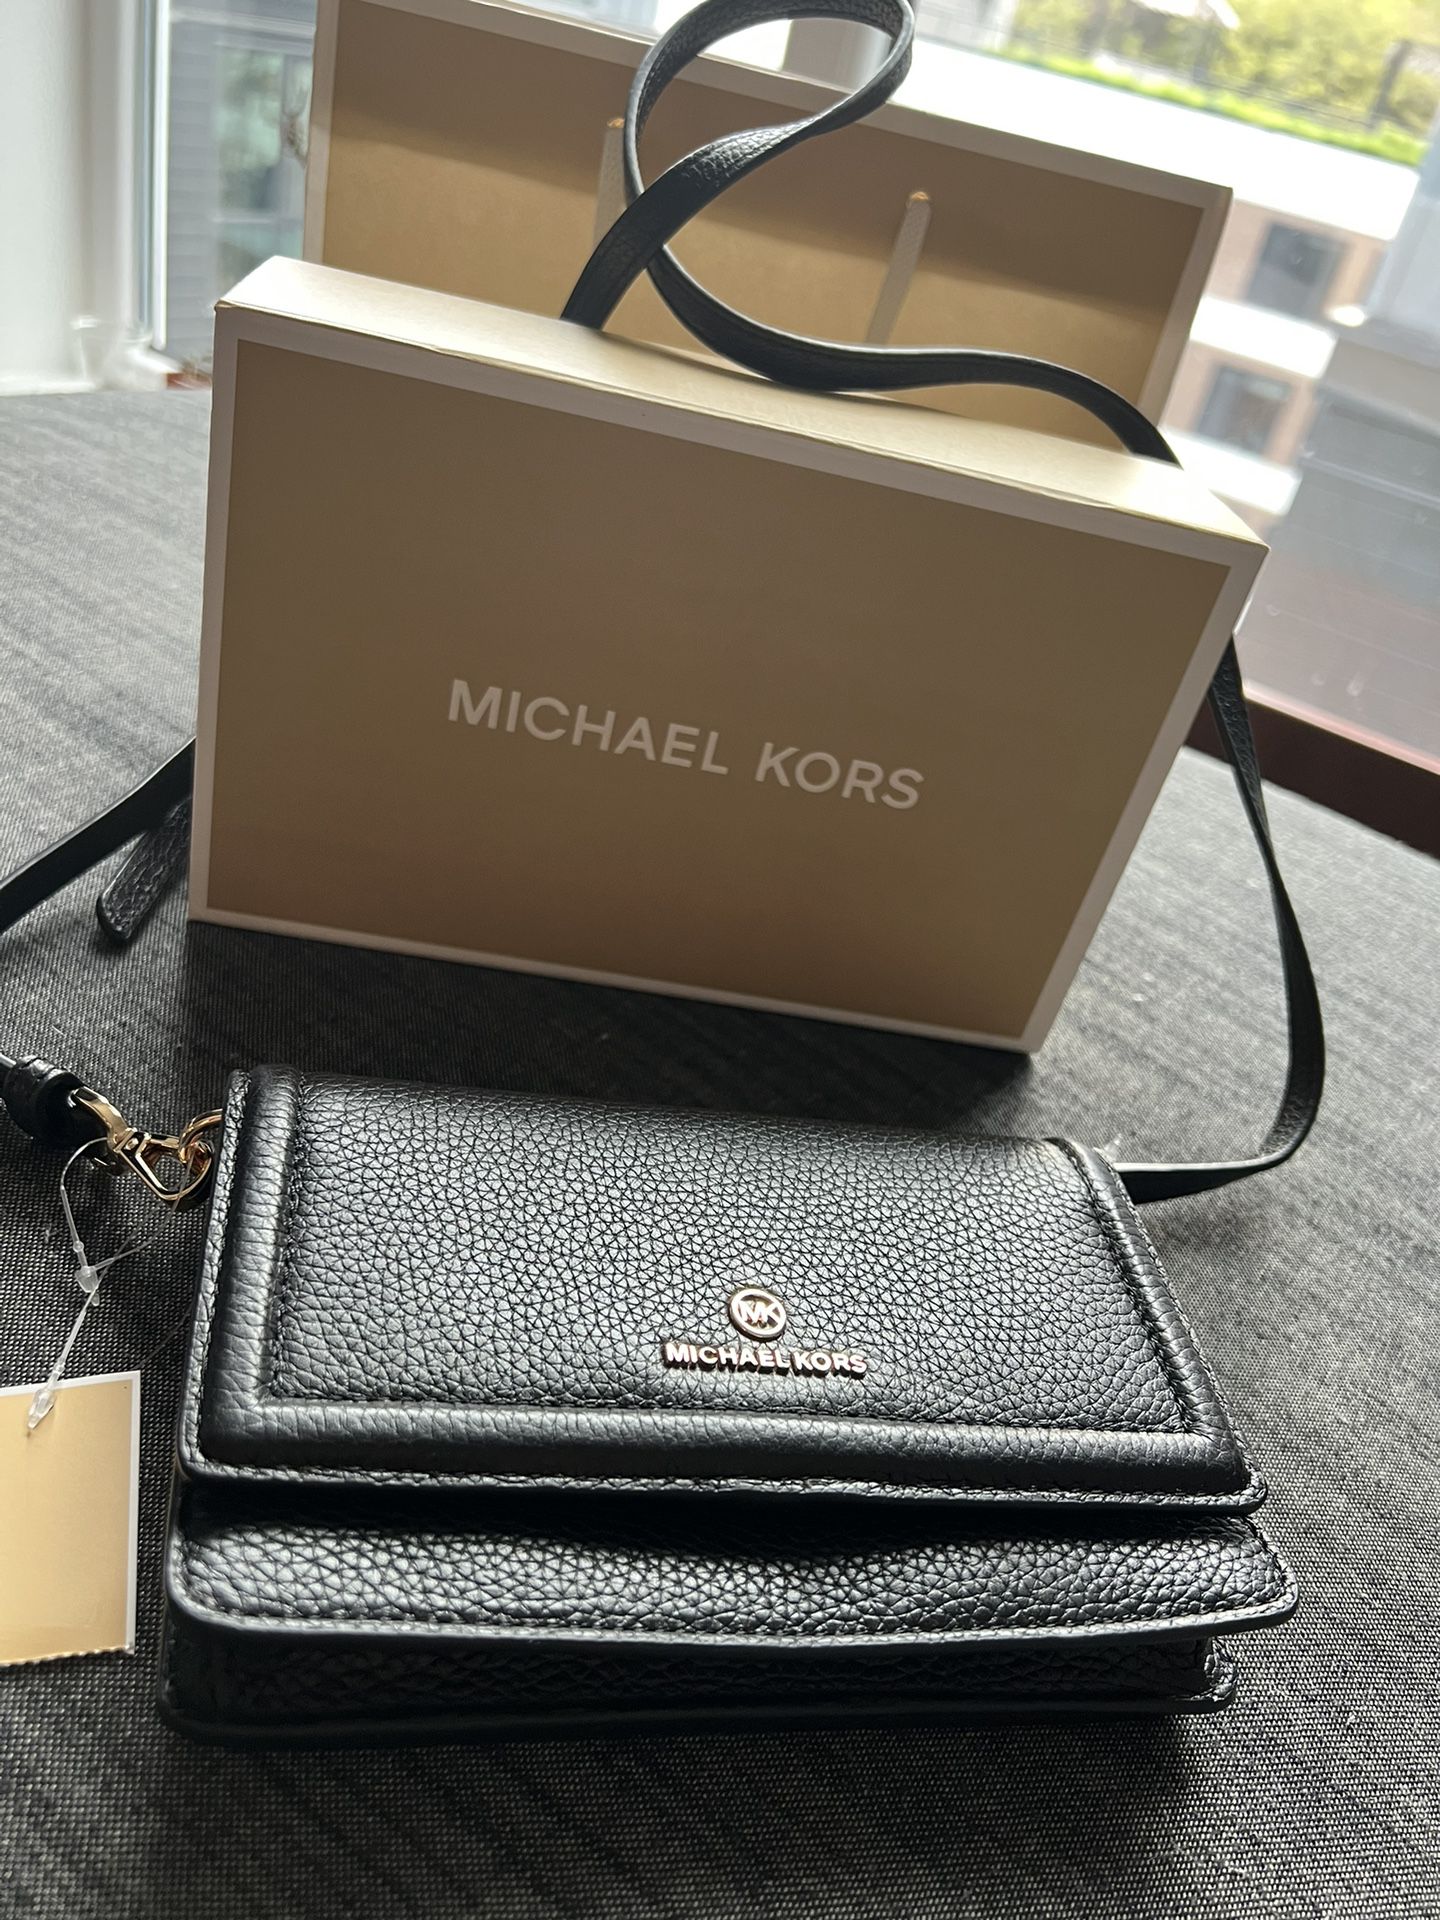 Brand New Michael Kors Leather Bag